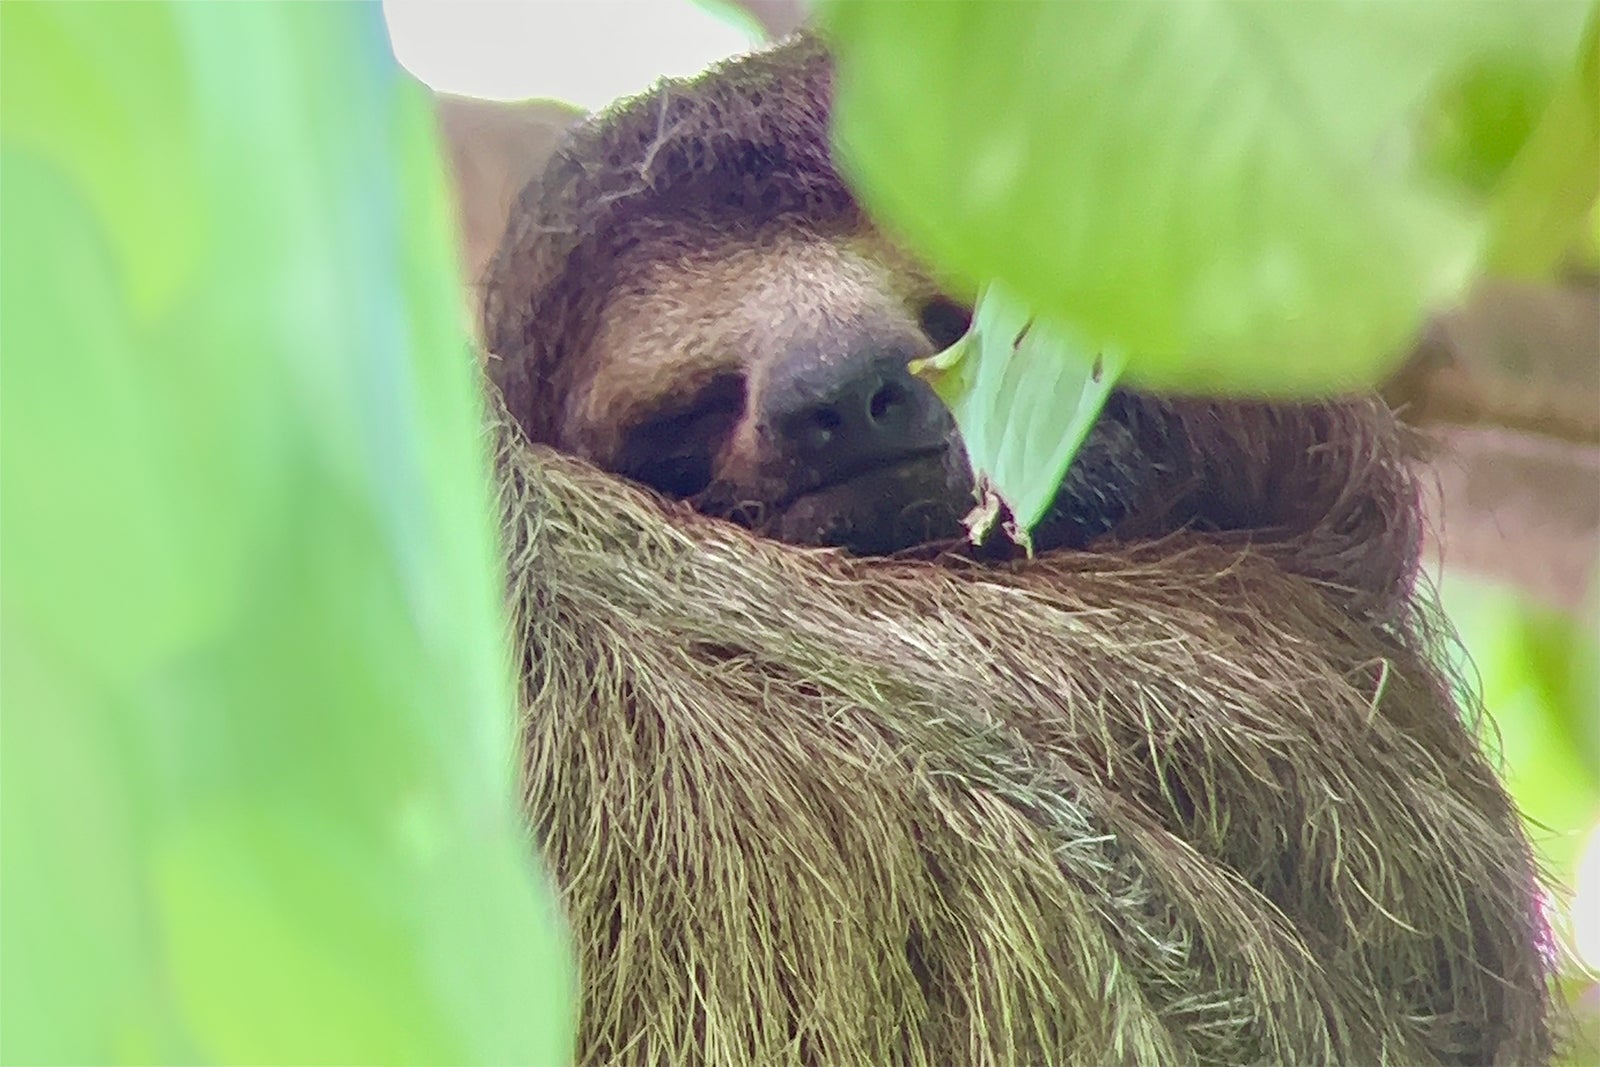 A sloth at La Perica sloth reserve in Costa Rica.